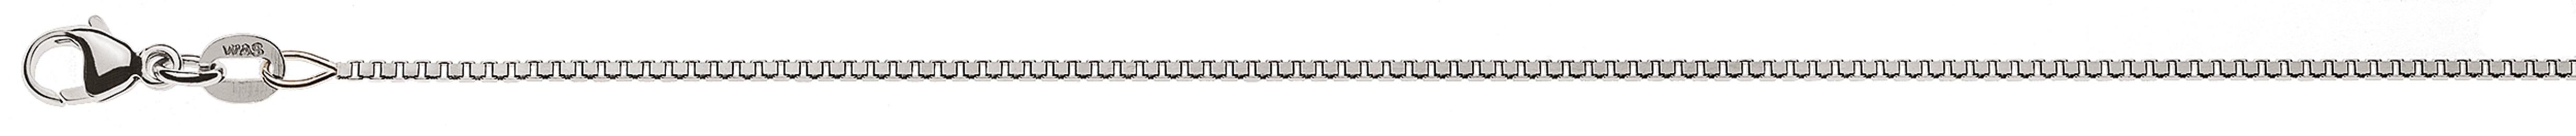 AURONOS Style Necklace white gold 9K Venetian chain diamond cut 55cm 1.1mm